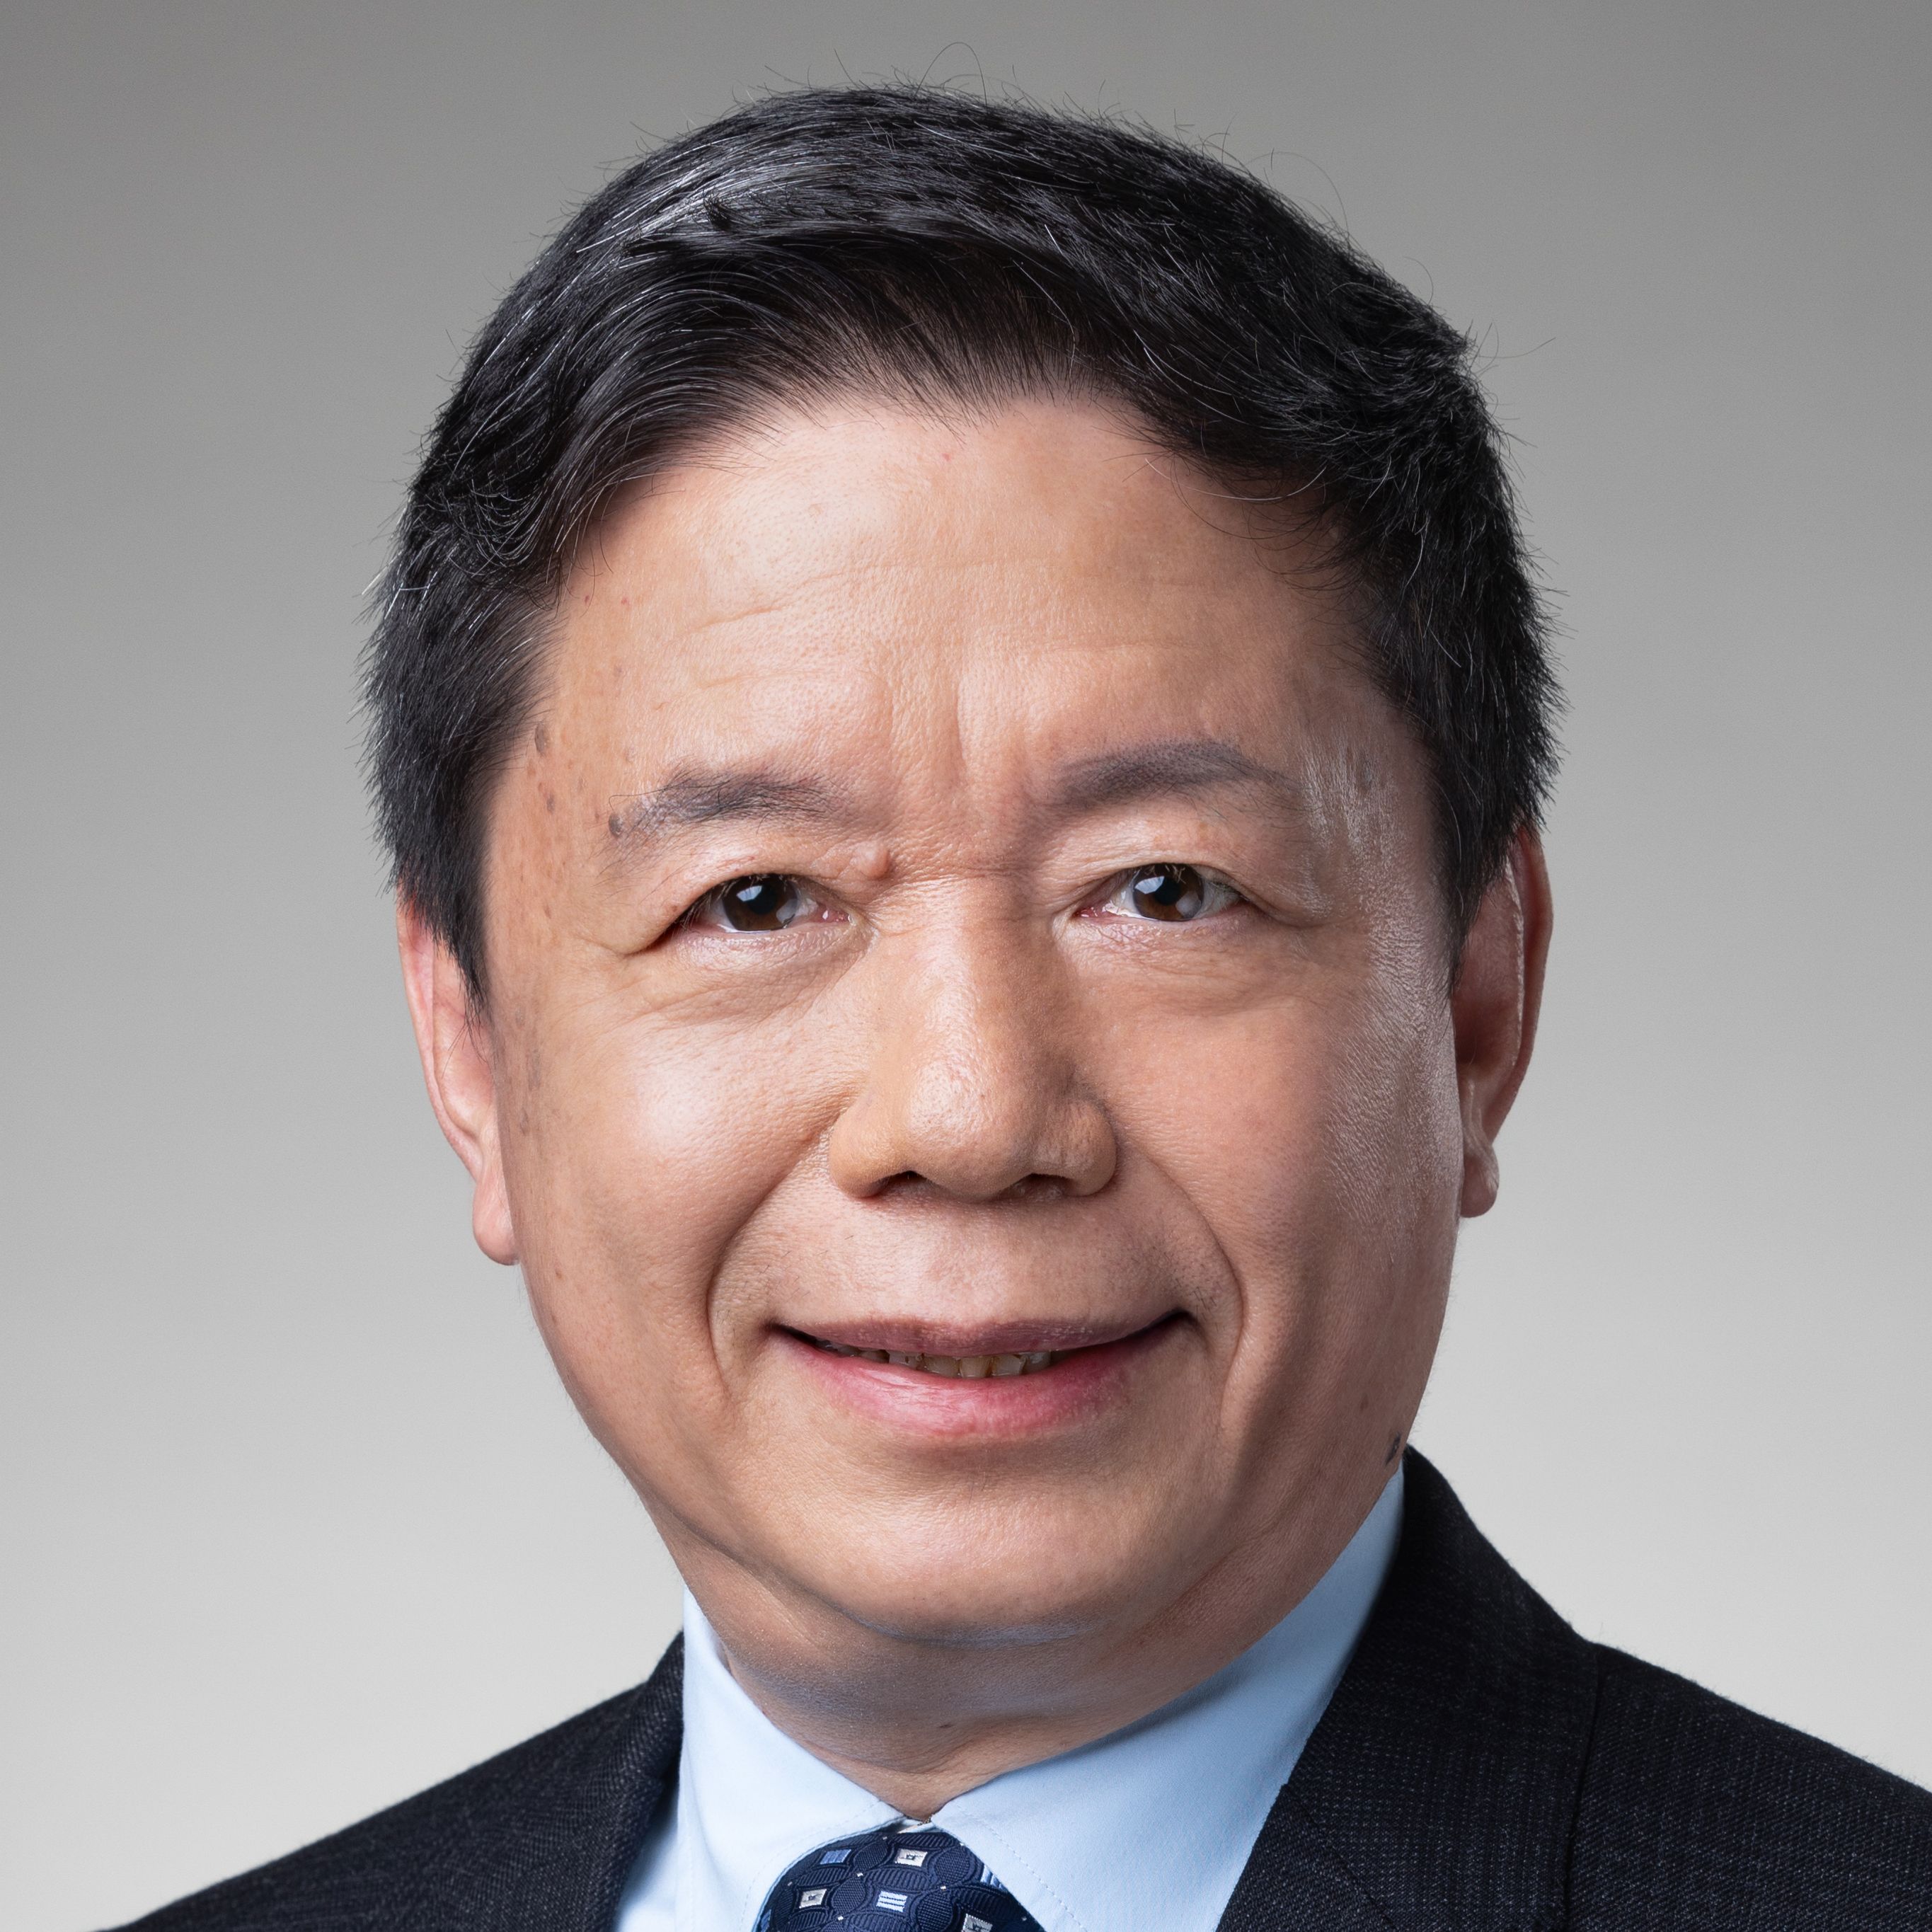 Professor Zhouping Xin